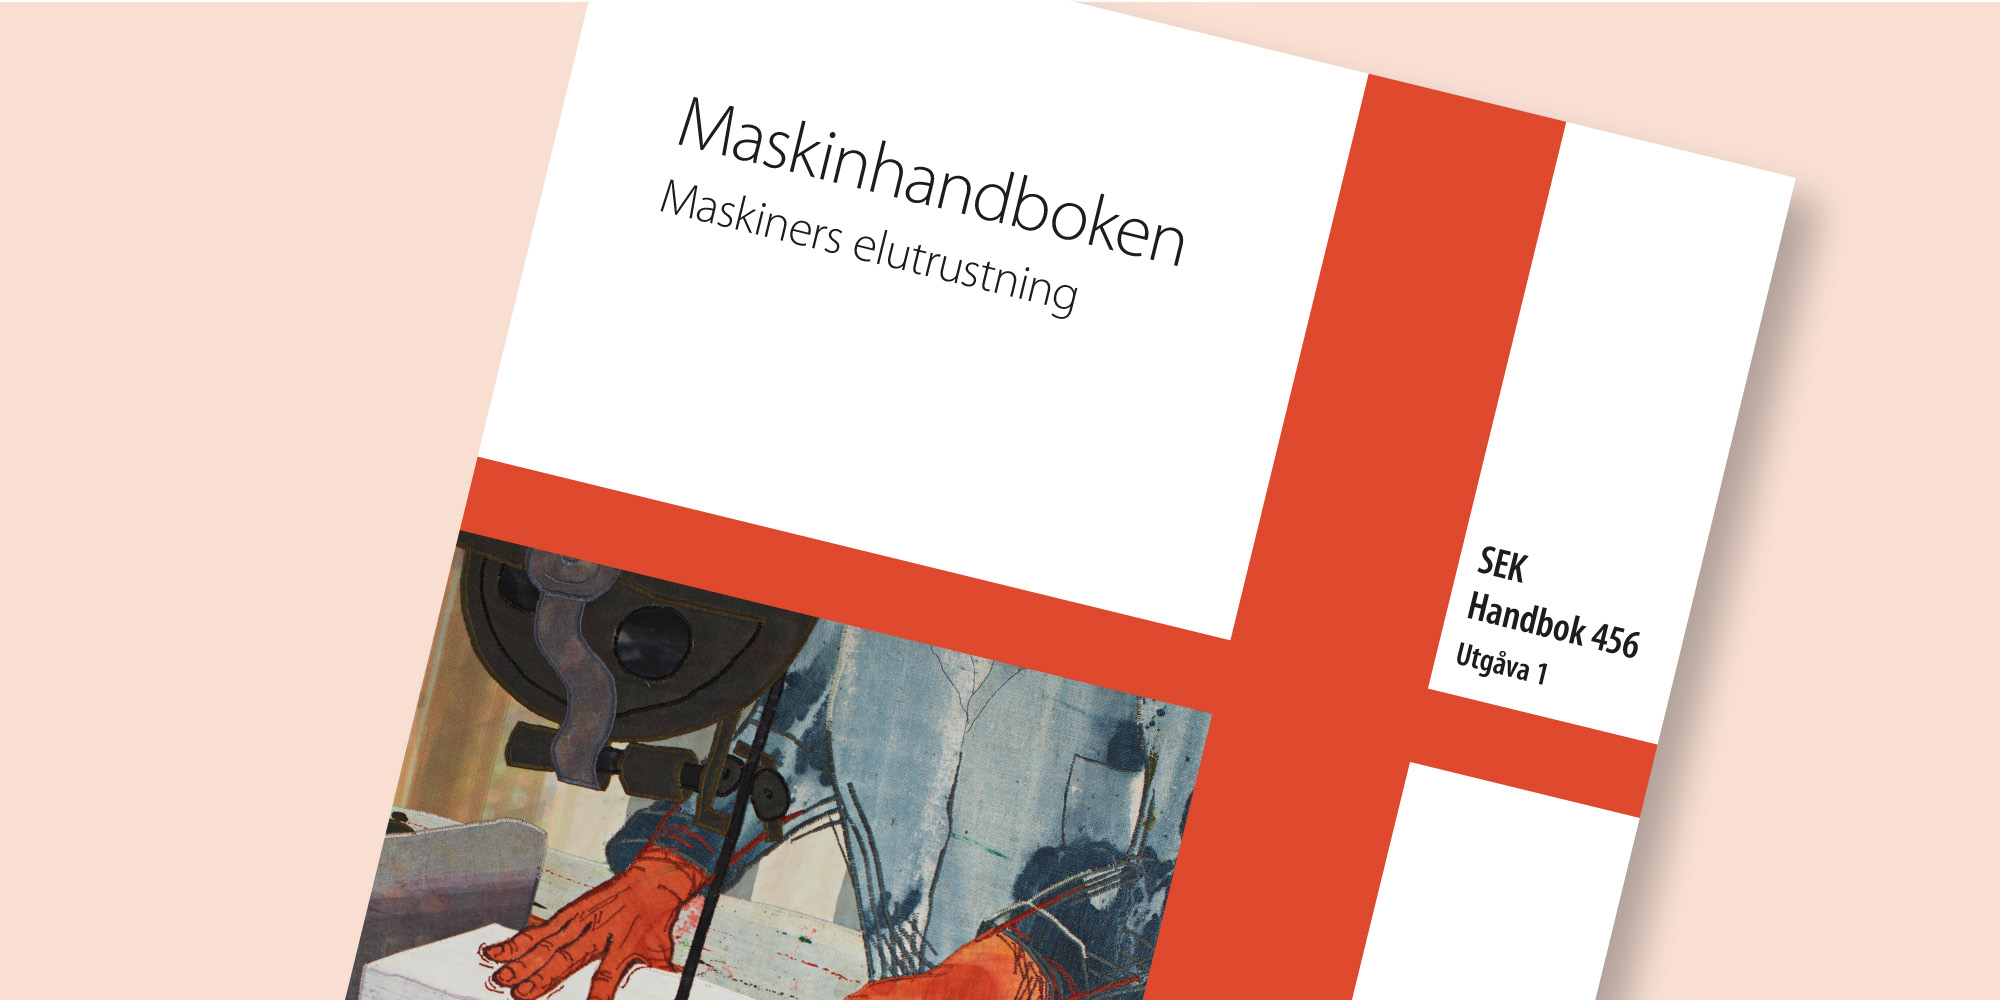 Maskinhandboken SEK Handbok 456